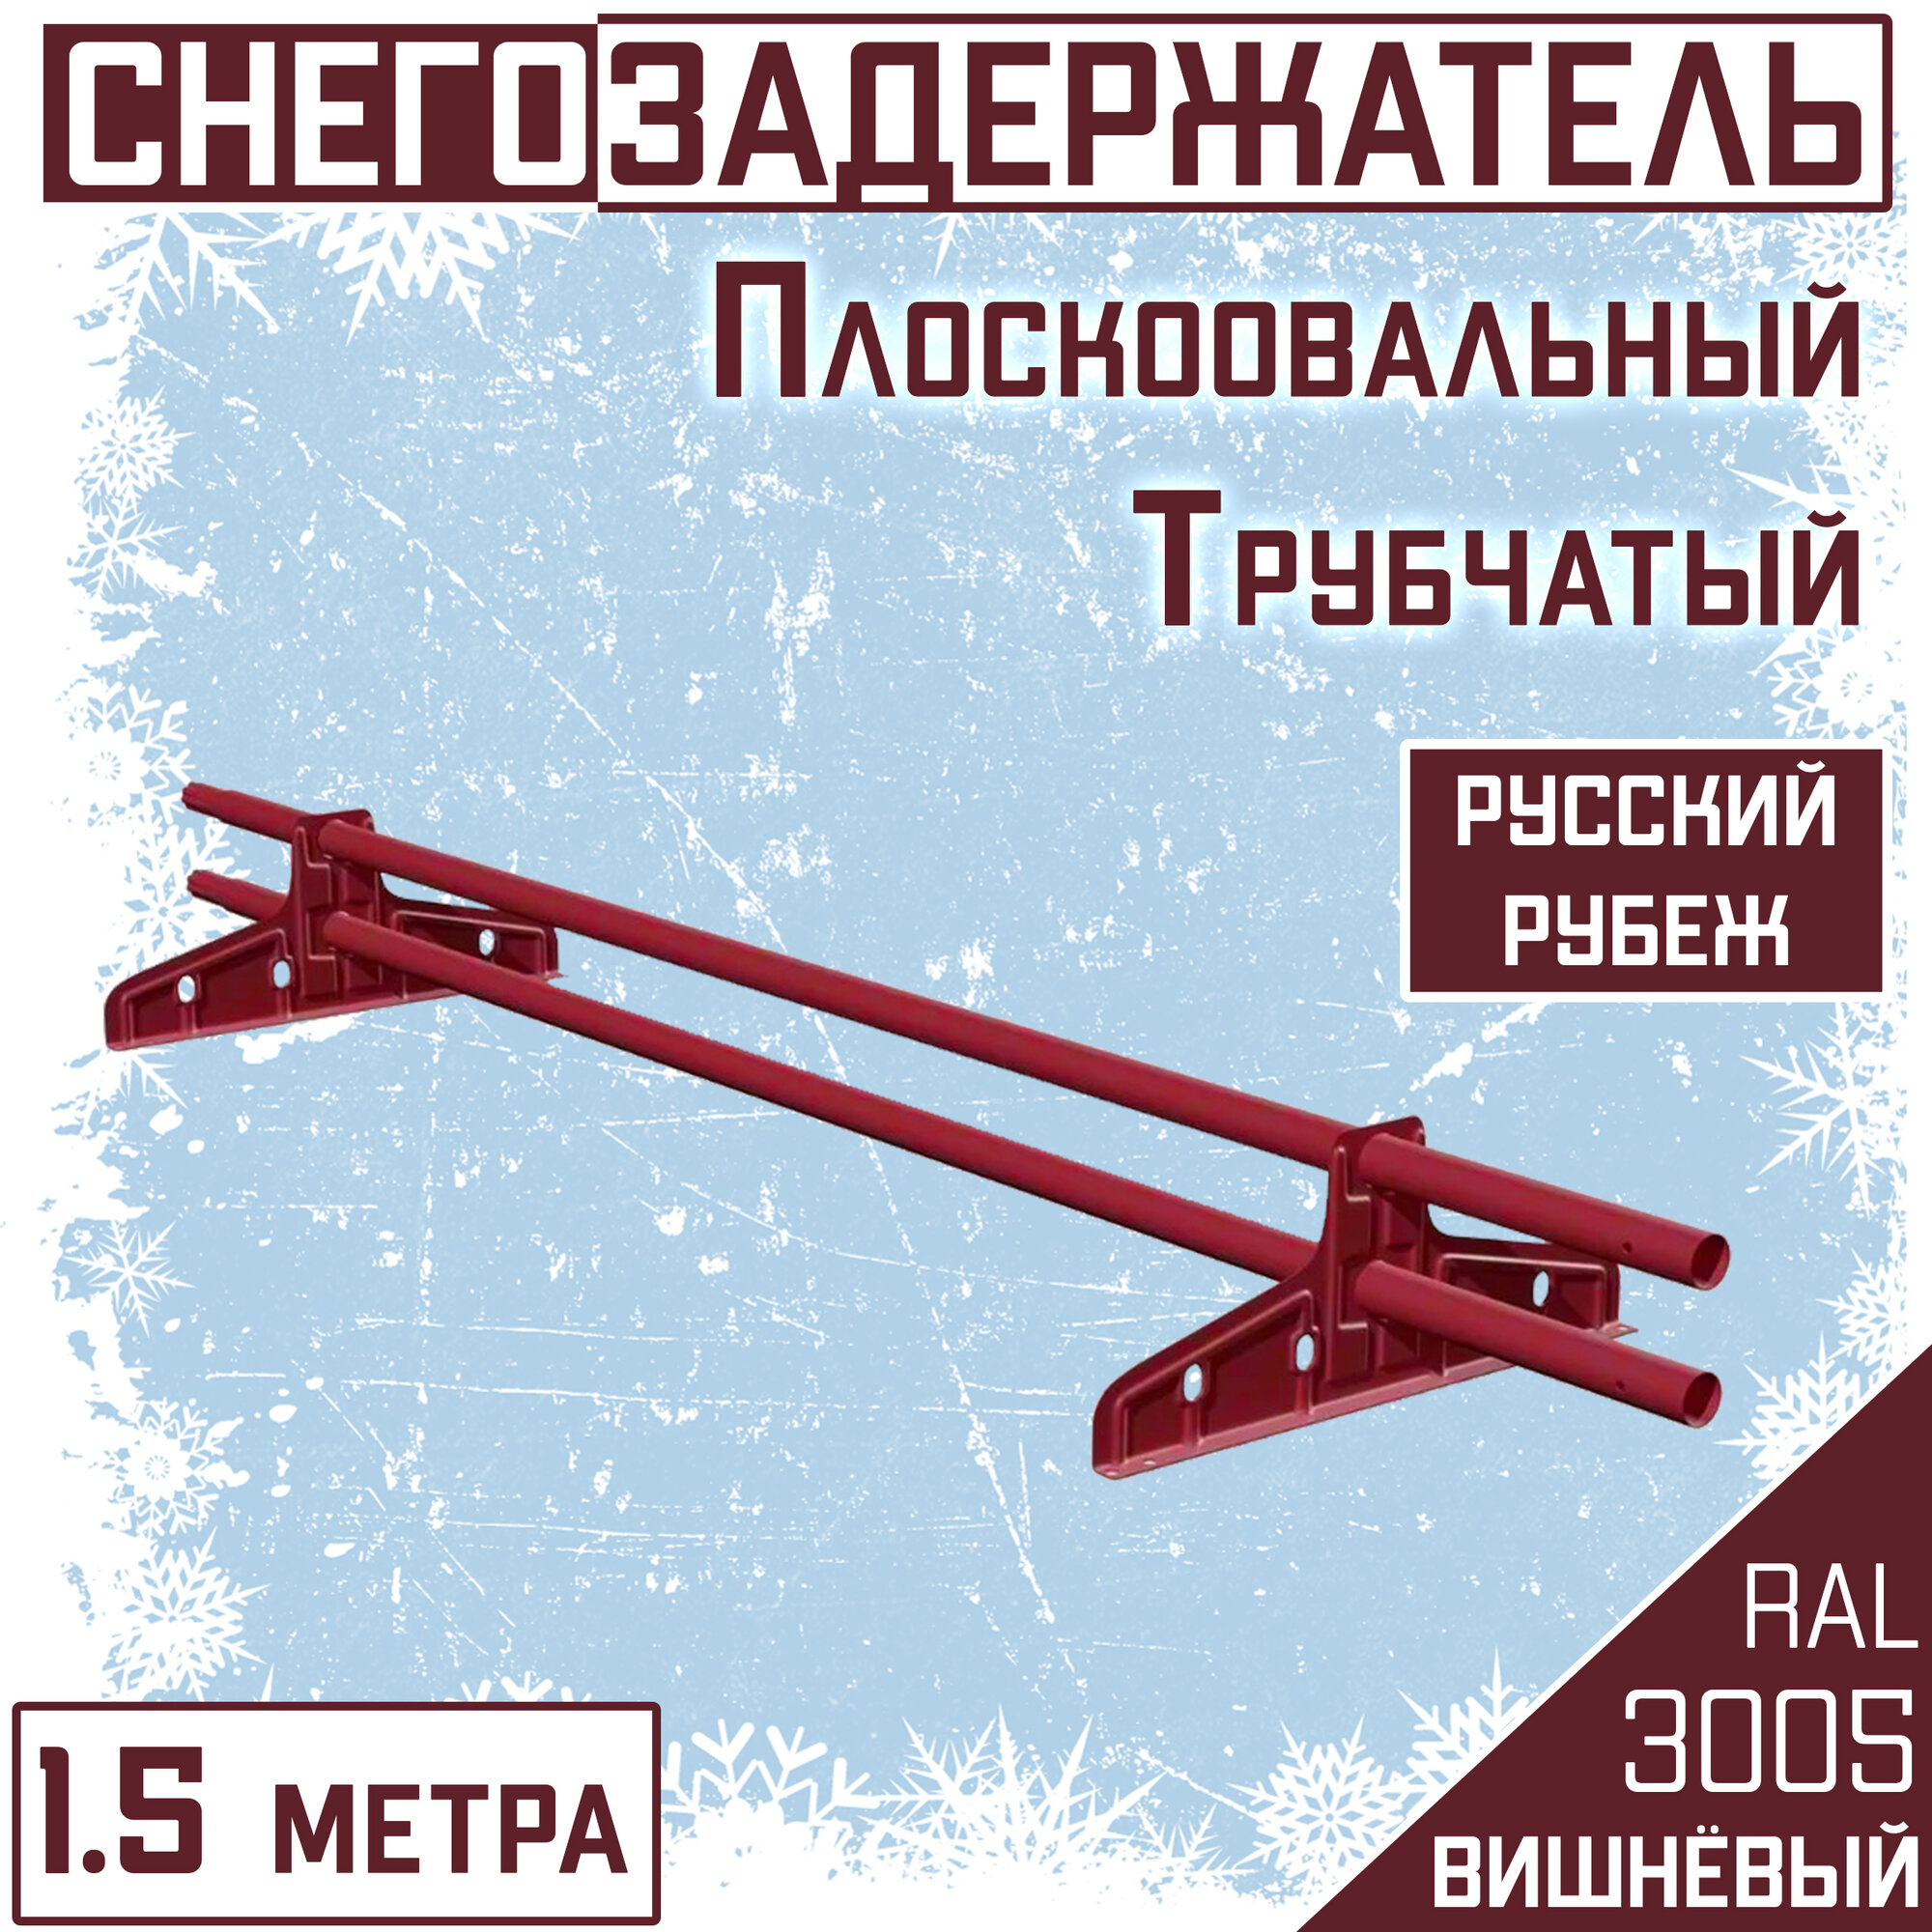 Снегозадержатель на крышу трубчатый круглый Borge "Русский рубеж" (d25/1,5м) RAL 3005 вишнёвый красный для гибкой и металлочерепицы, профнастила